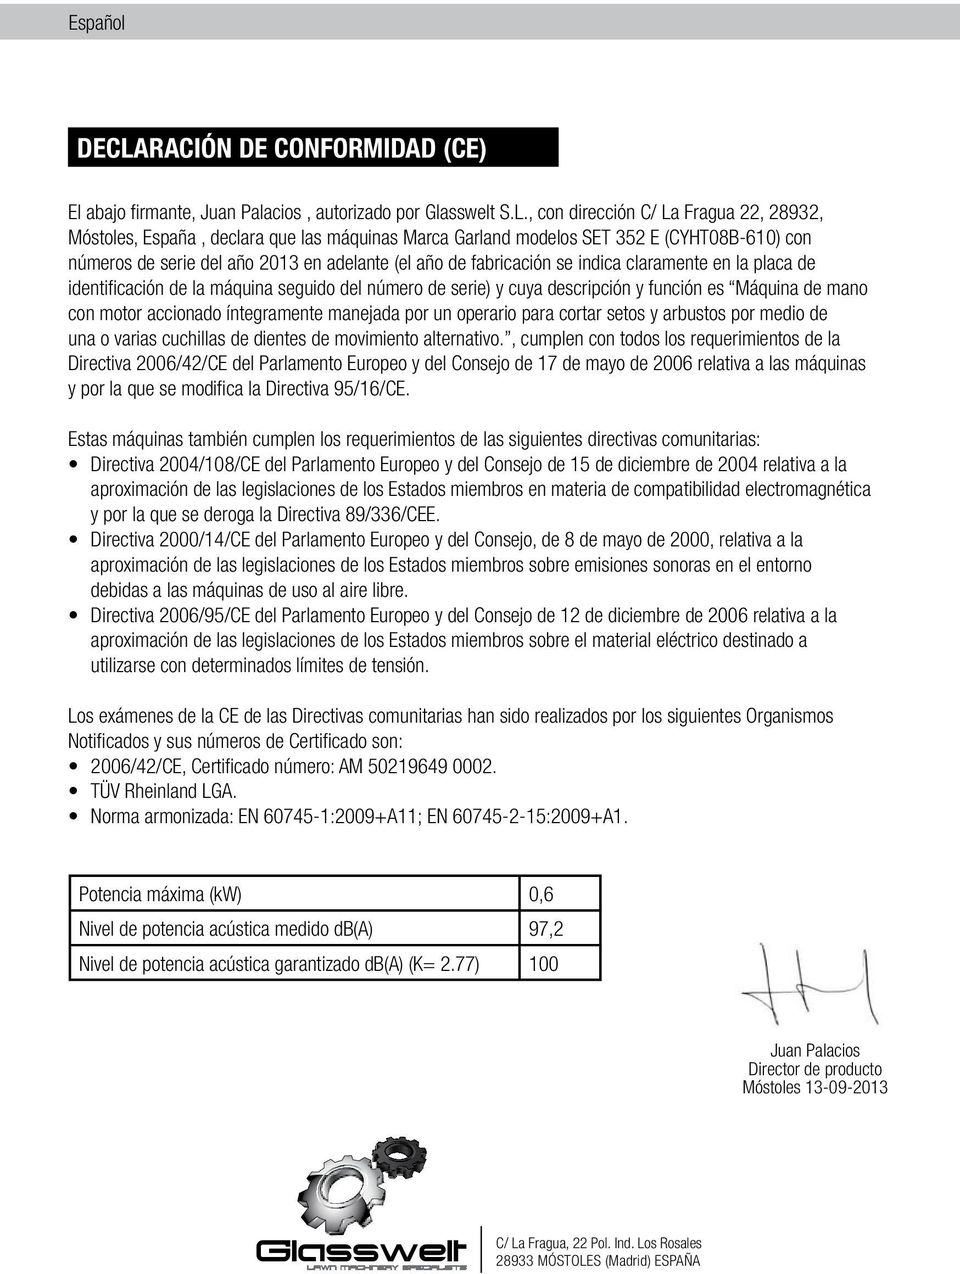 , con dirección C/ La Fragua 22, 28932, Móstoles, España, declara que las máquinas Marca Garland modelos SET 352 E (CYHT08B-610) con números de serie del año 2013 en adelante (el año de fabricación